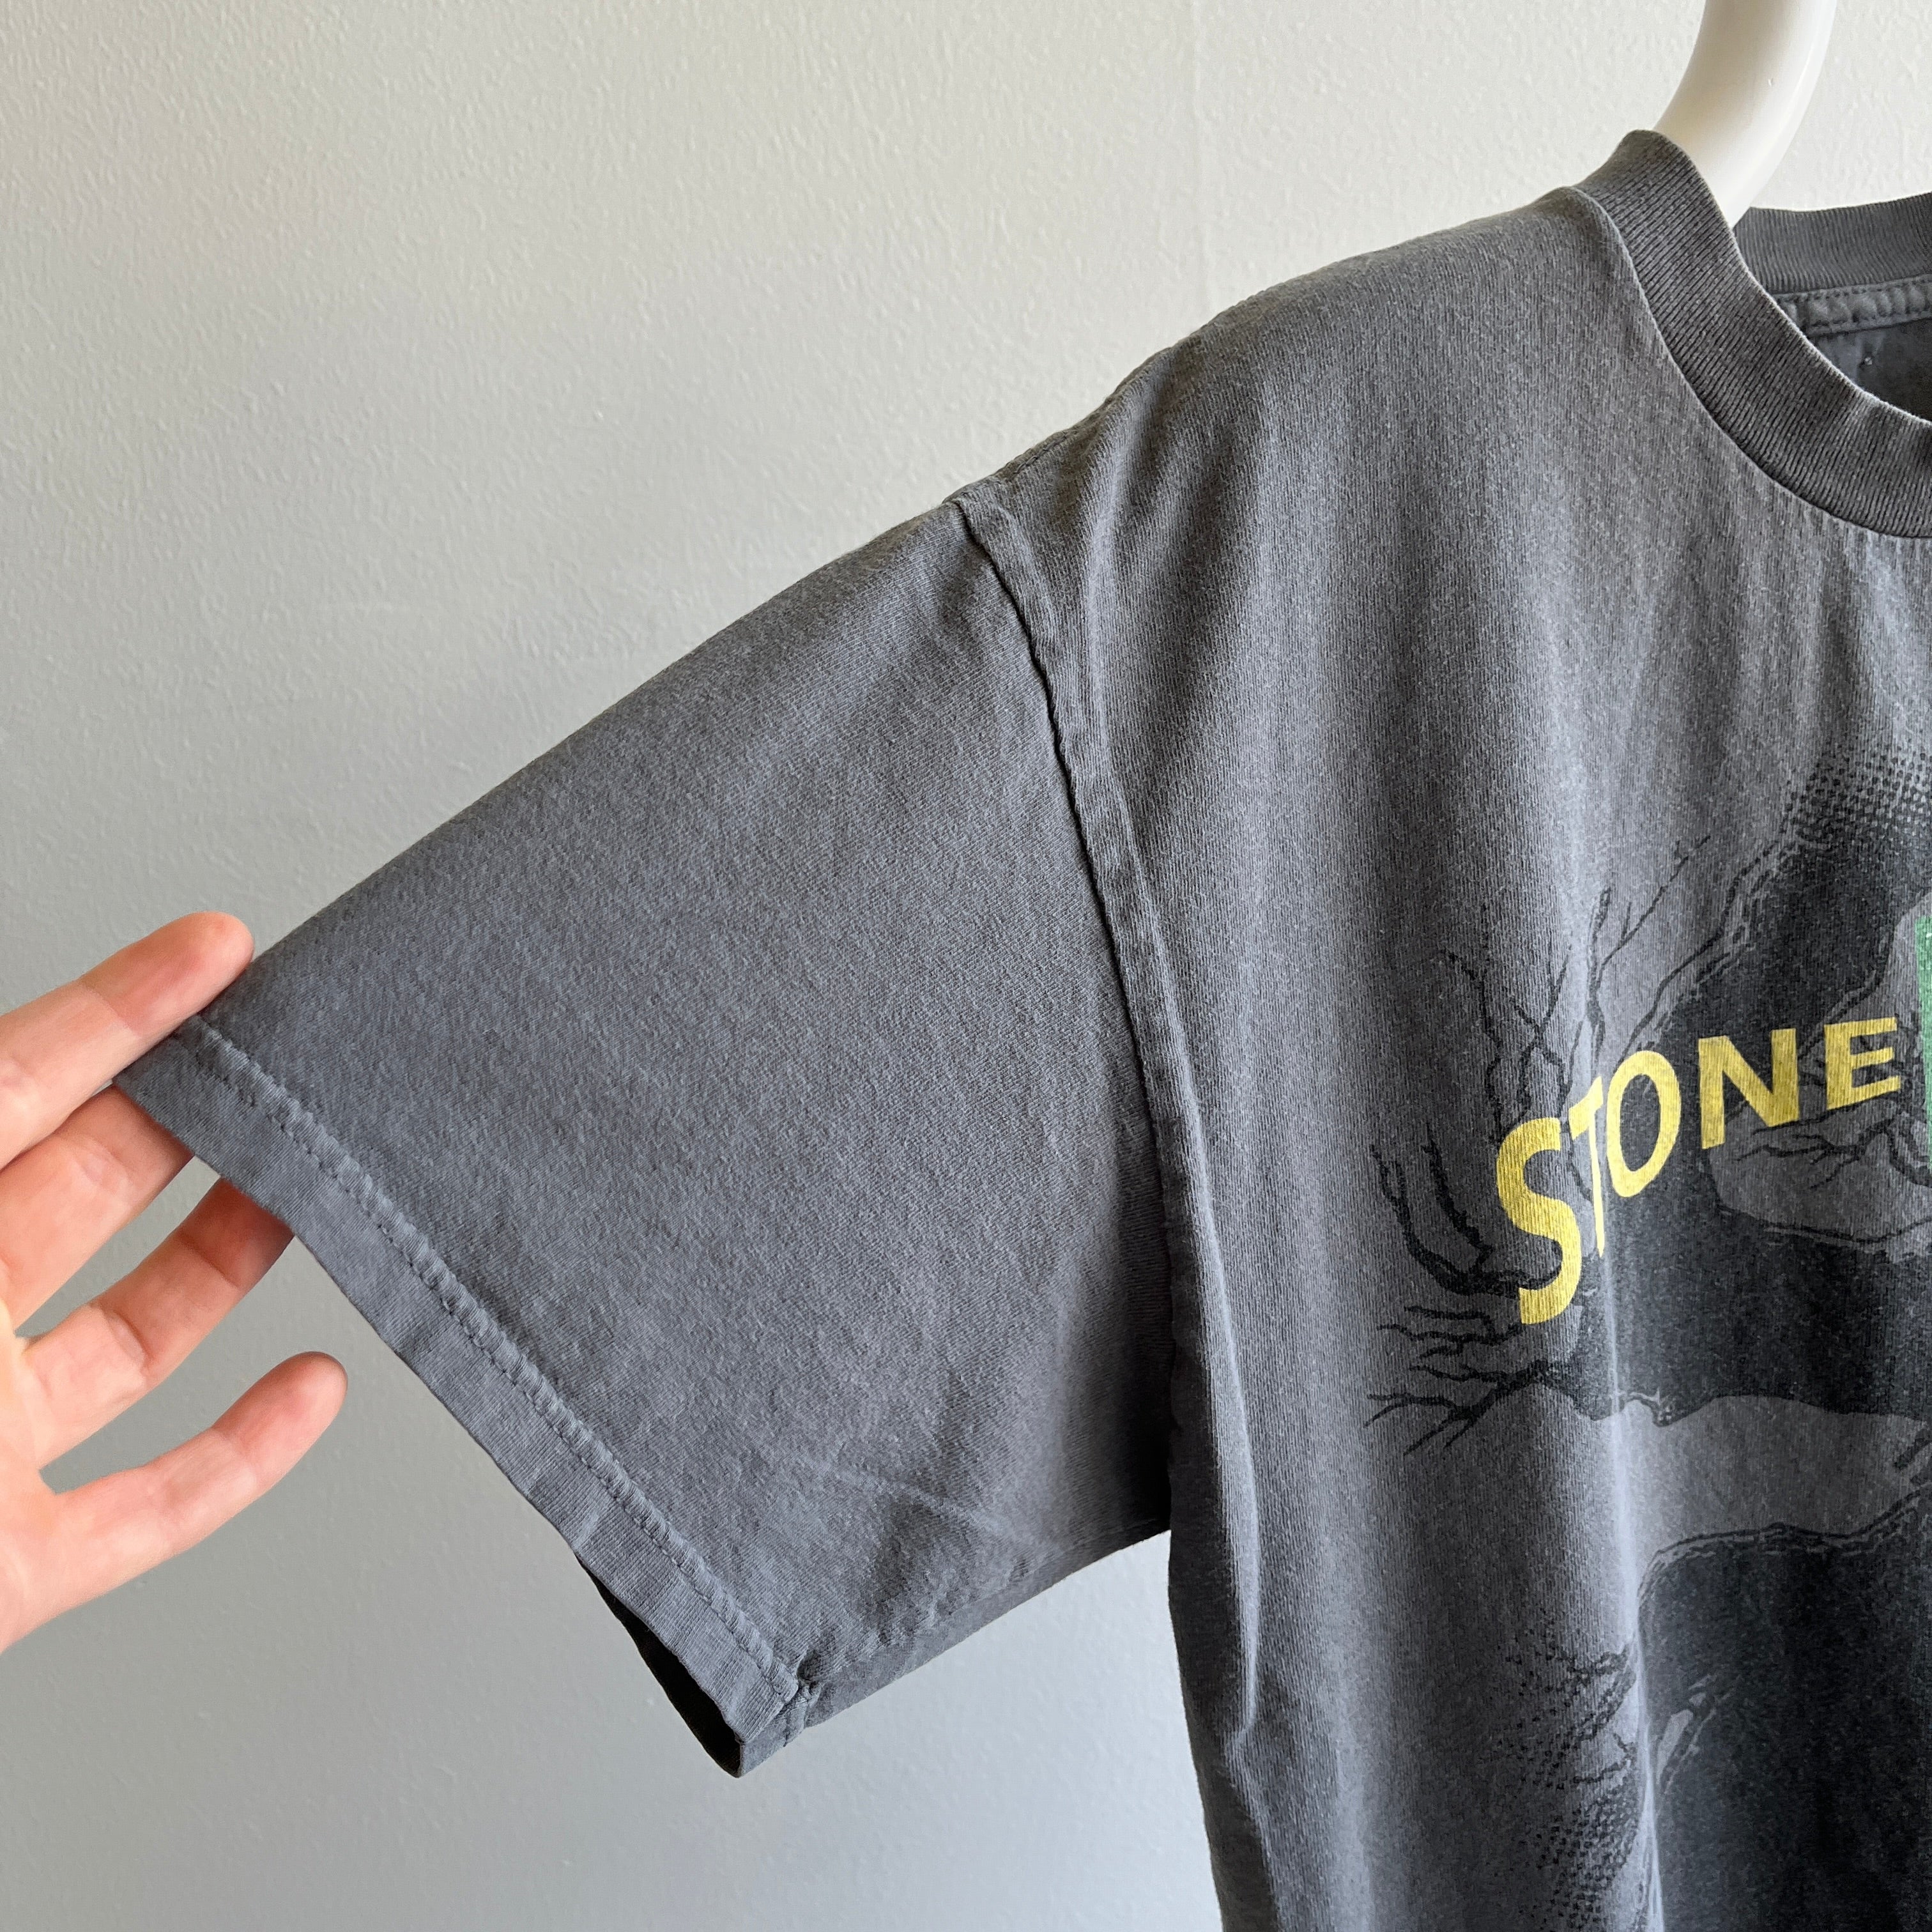 1992 Stone Temple Pilots Core Album T-shirt Réimpression